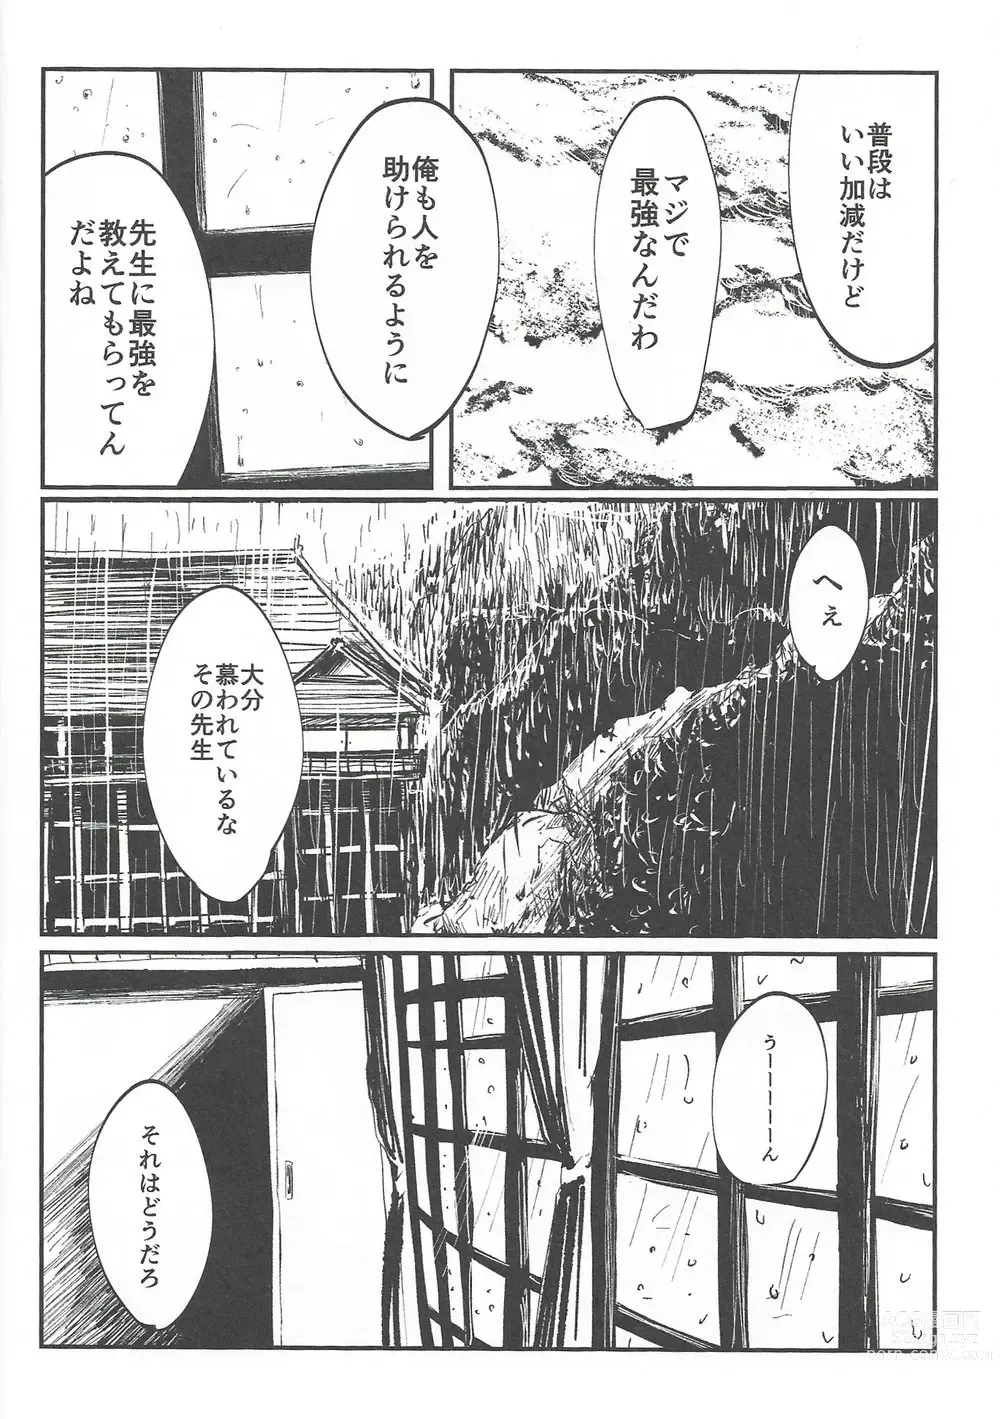 Page 16 of doujinshi Rakuen no Niwa